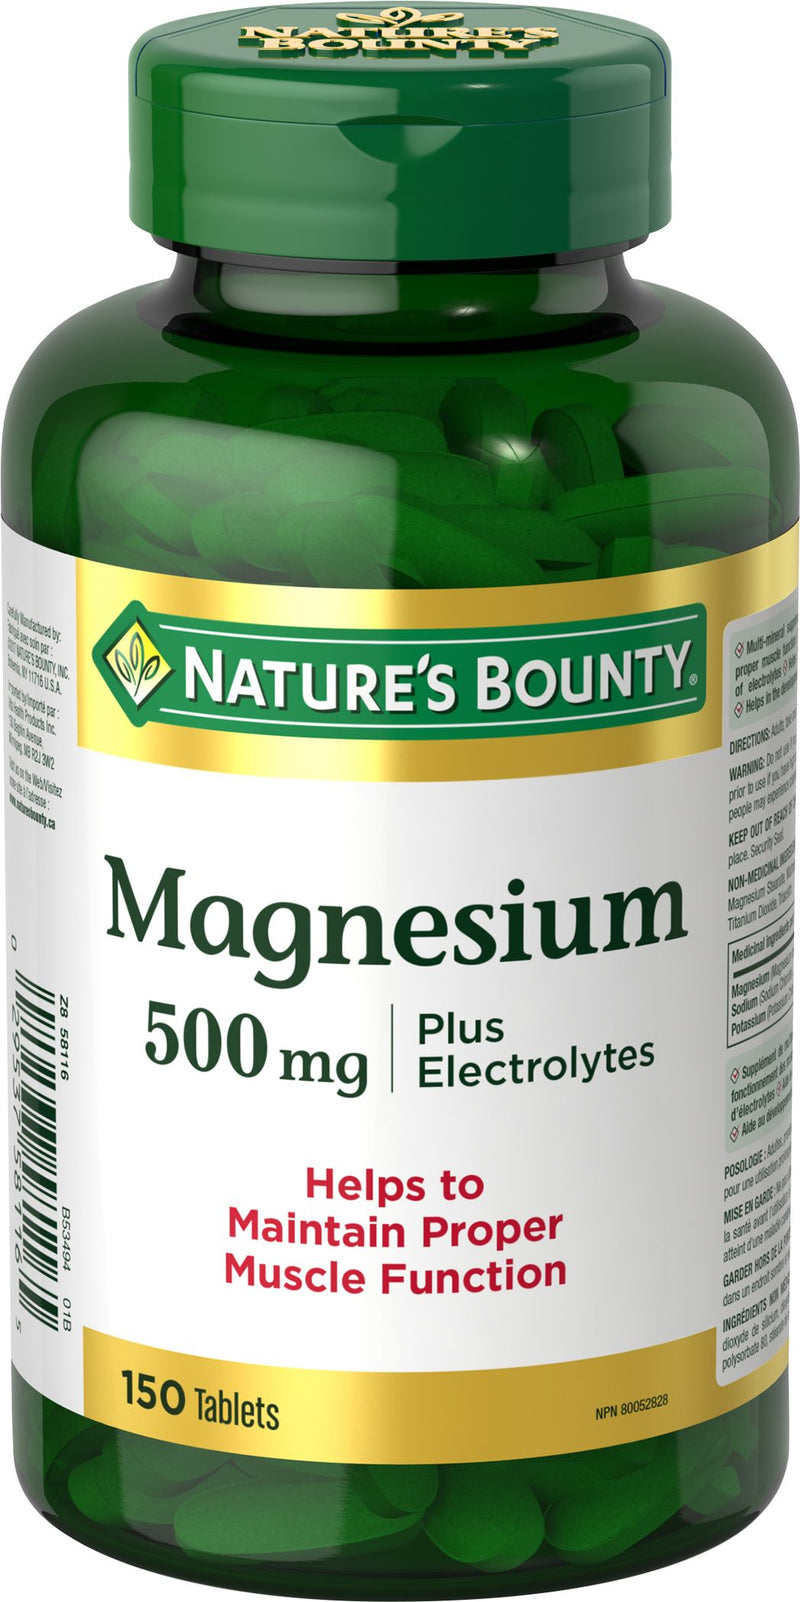 Nature's Bounty Magnesium & Electrolytes